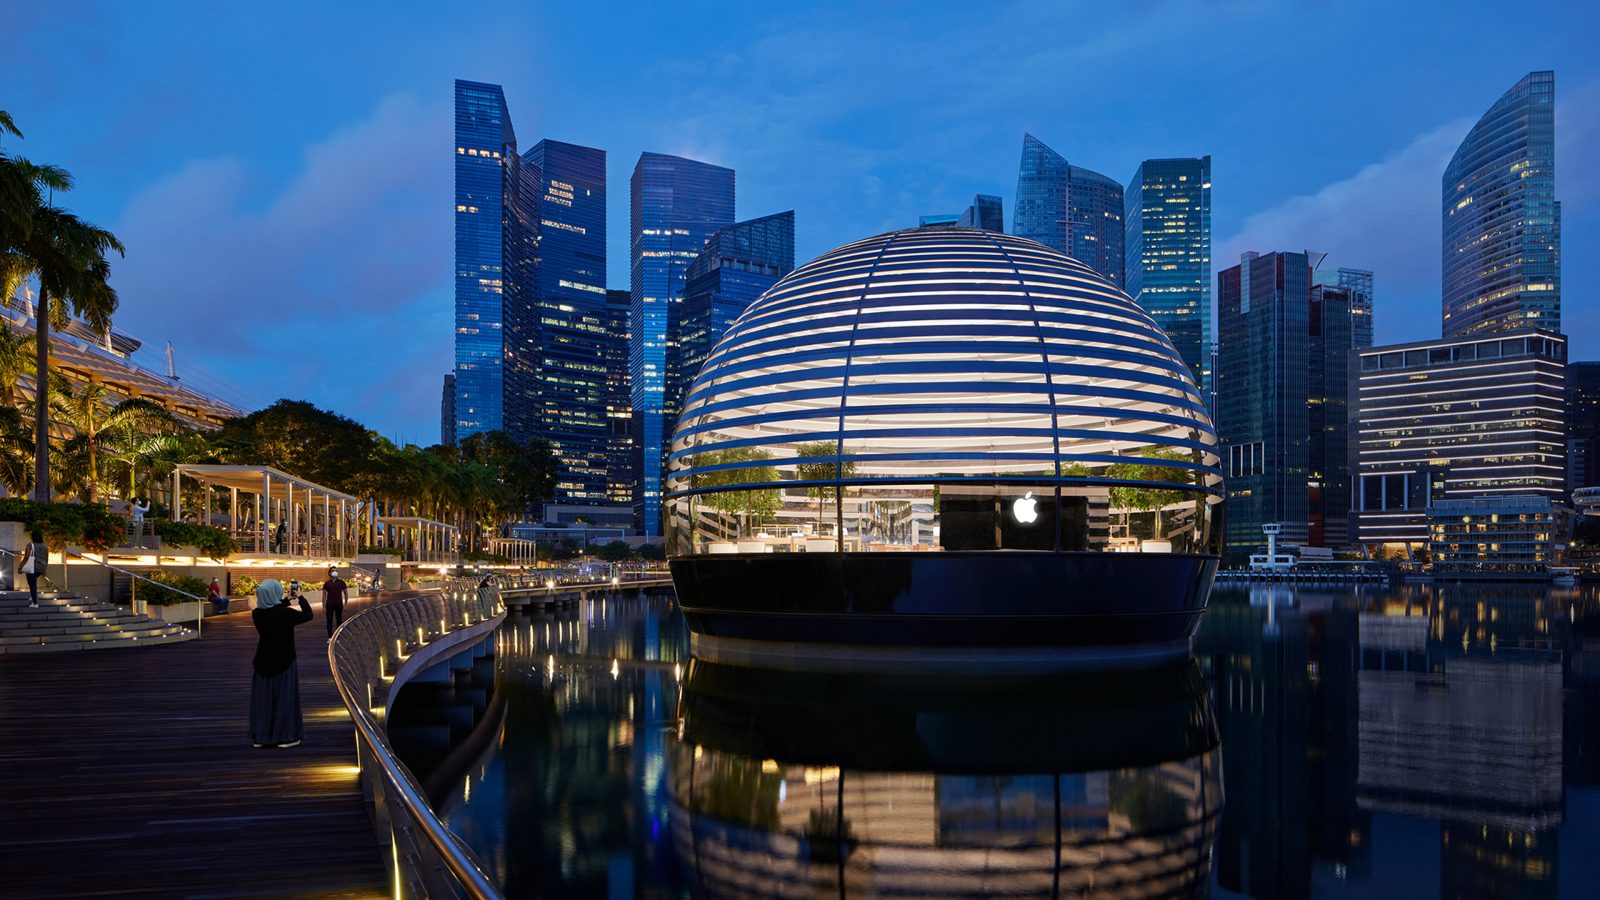 Apple Marina Bay Sands, Singapore – darc awards